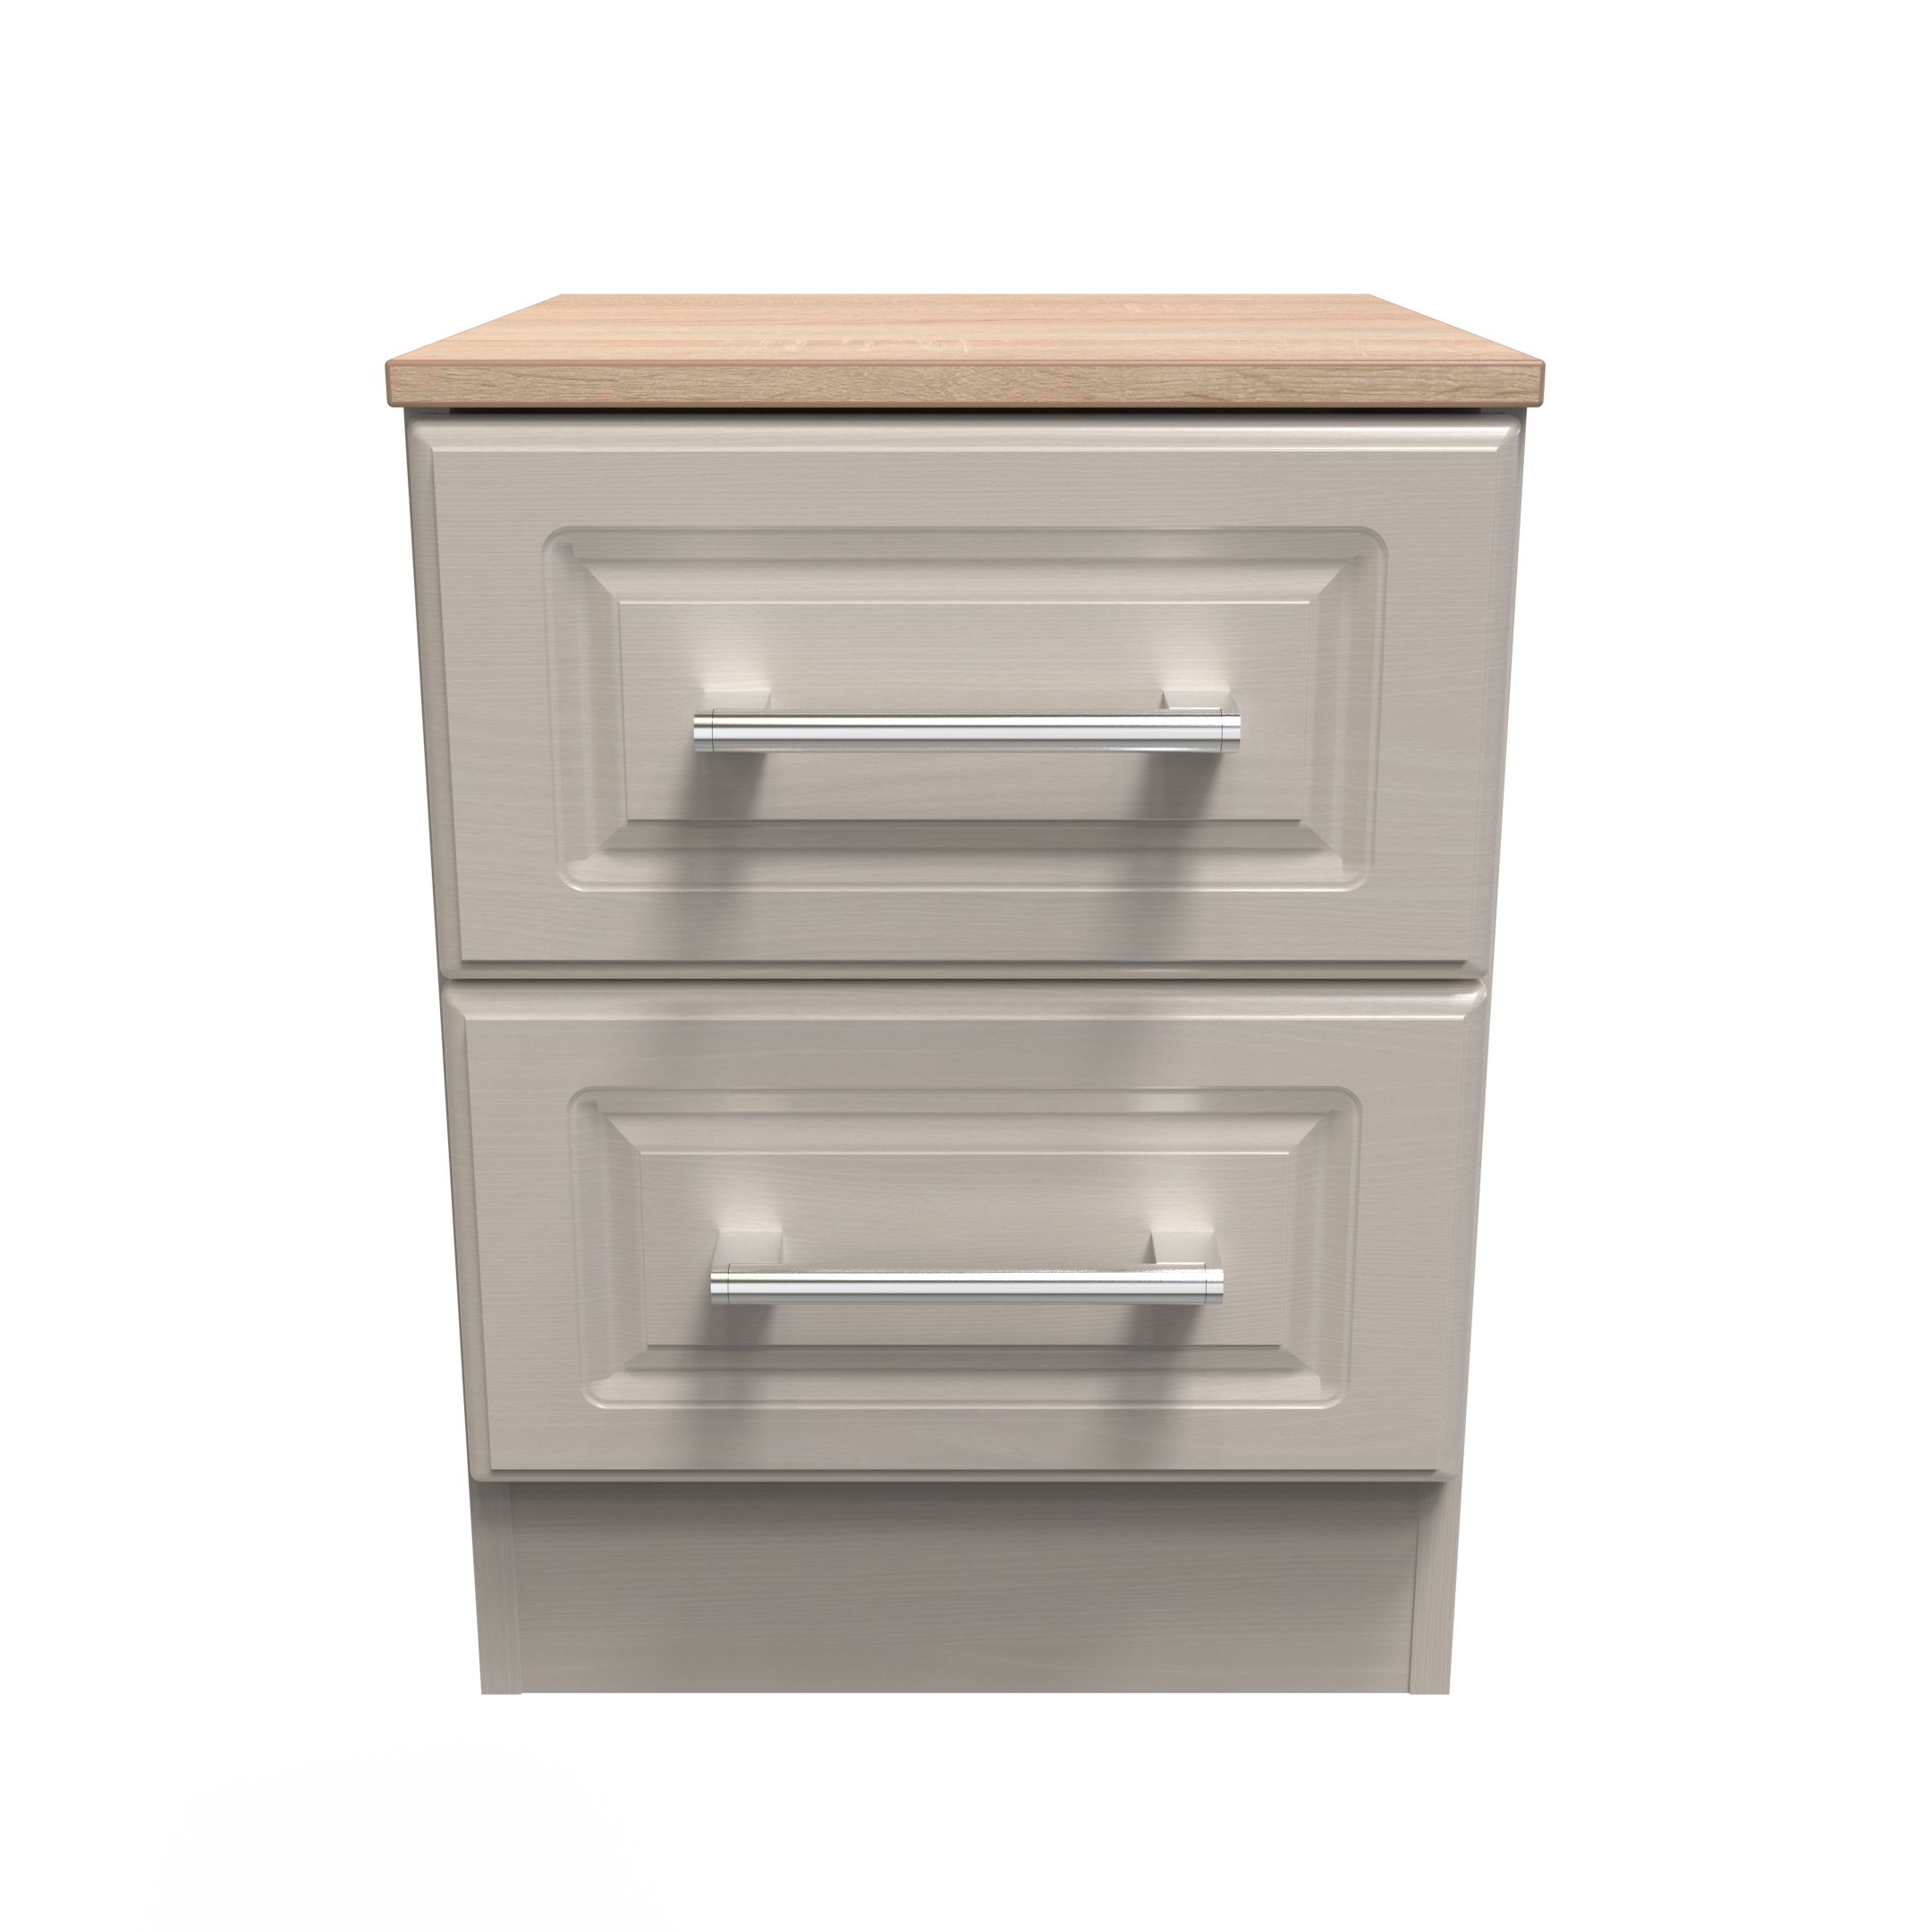 Kent Ready assembled Matt beige light oak effect 2 Drawer Bedside chest (H)505mm (W)395mm (D)415mm